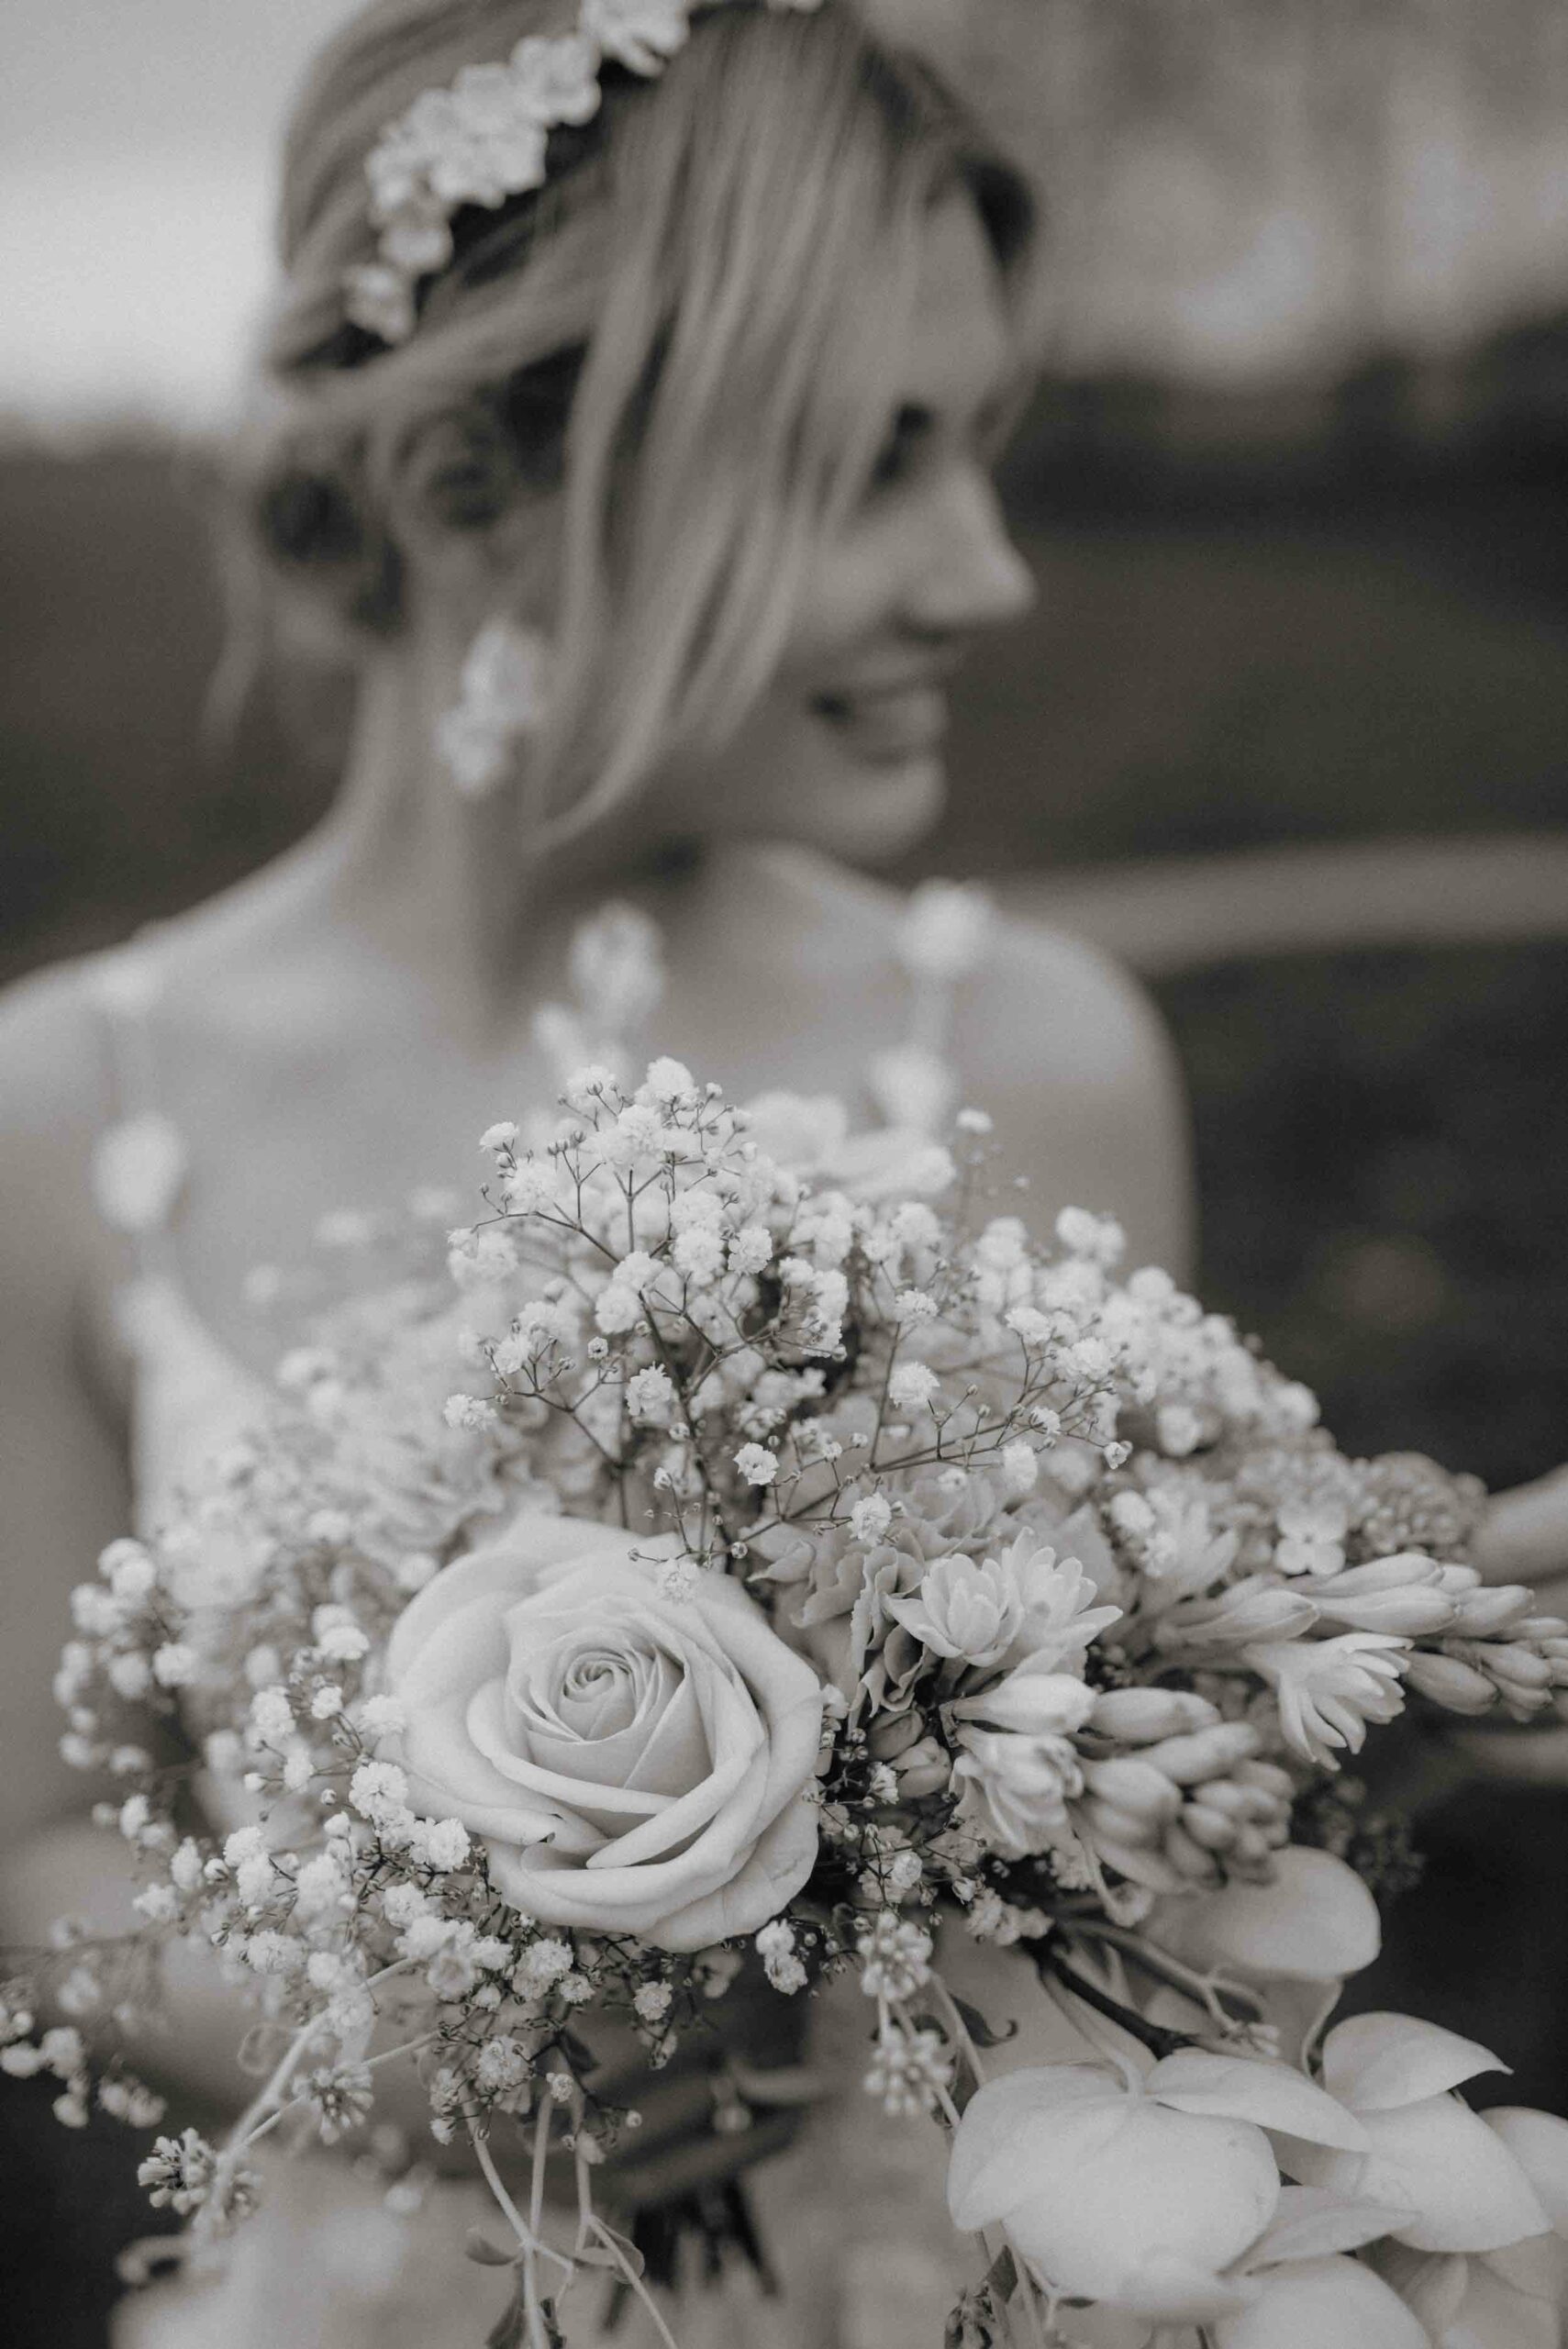 Eine Braut mit Blumenkranz und einem Strauß aus weißen Blumen in der Hand, aufgenommen während einer Hochzeitsreportage an einer Location in der Nordheide.